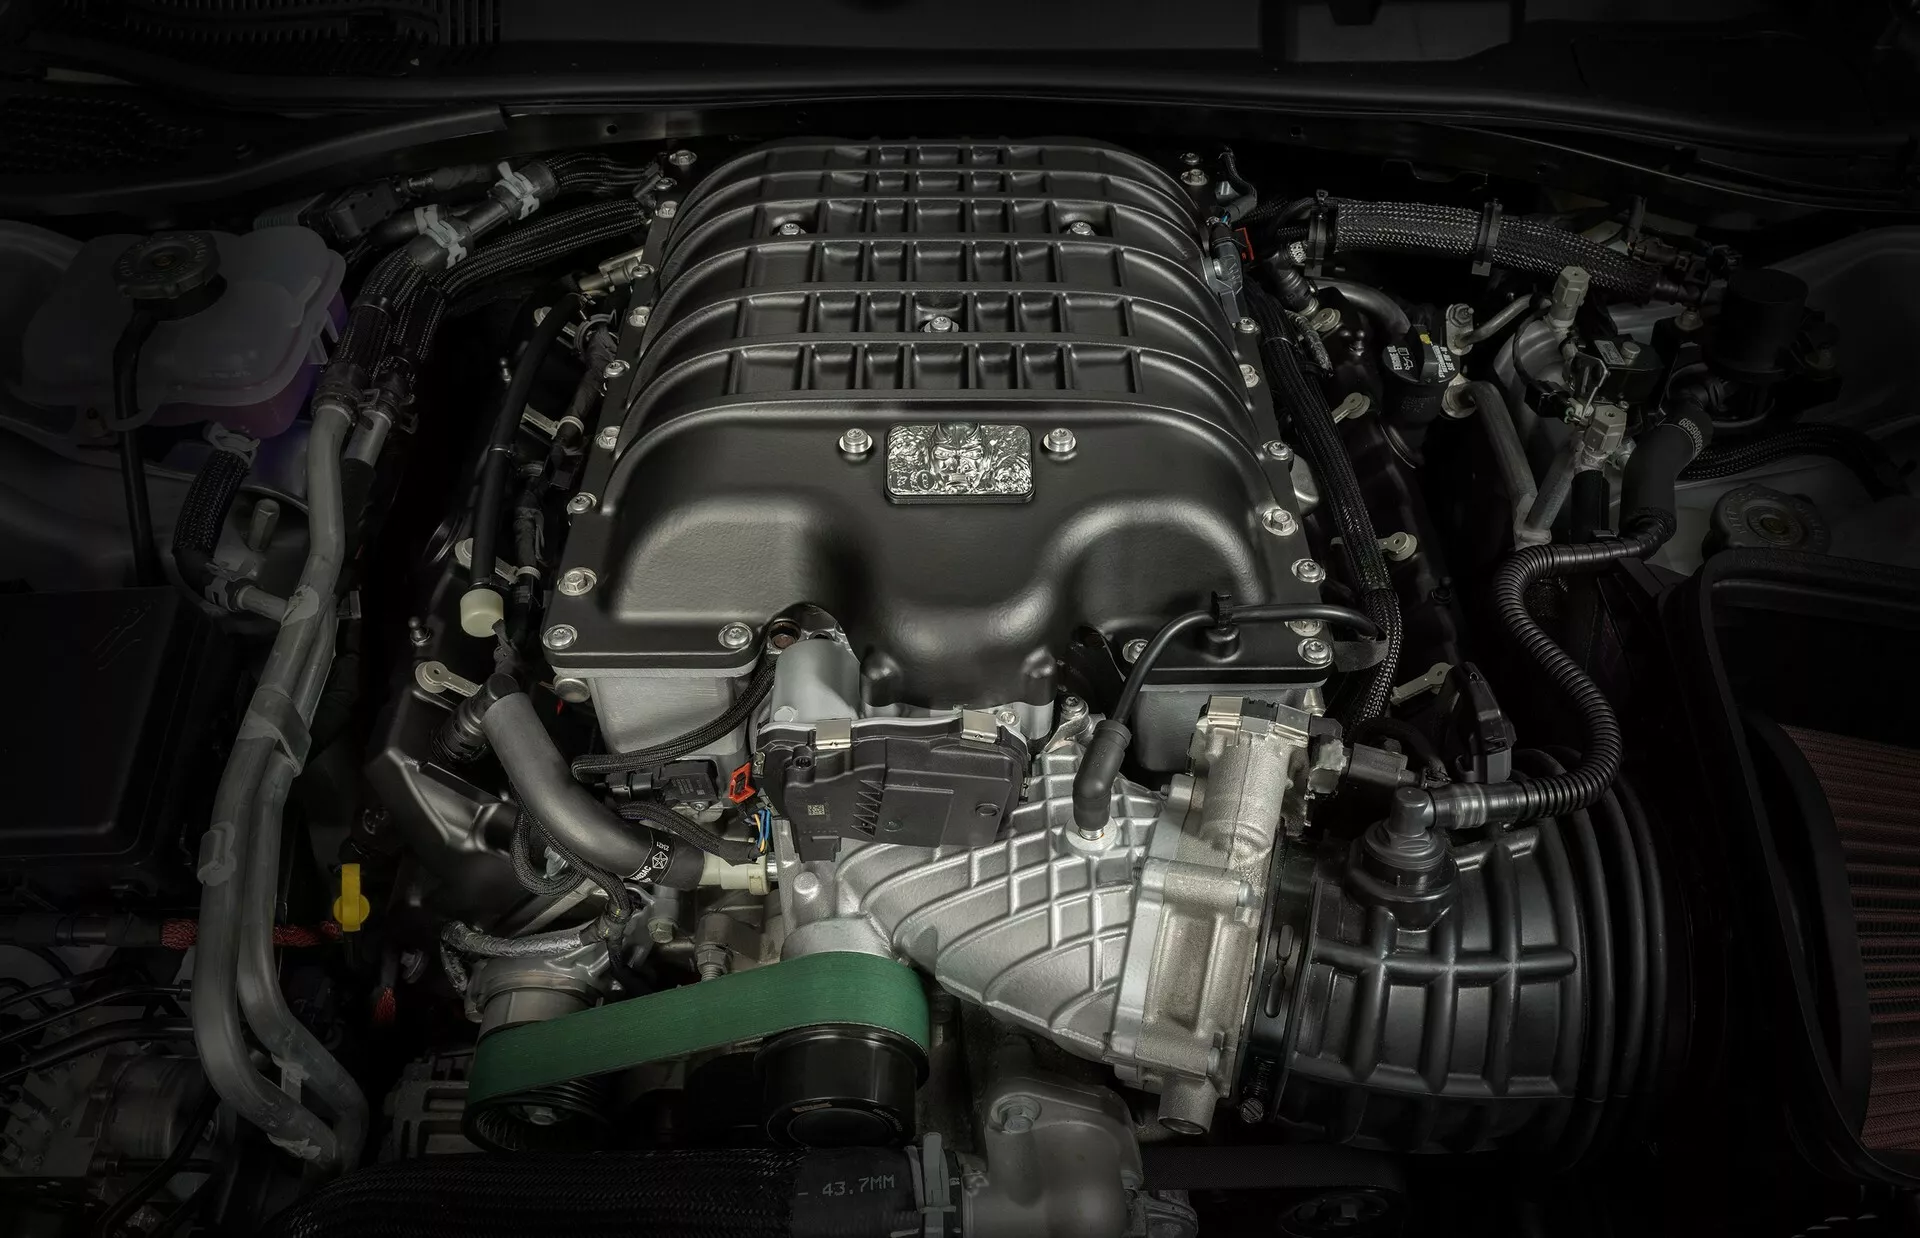 دودج تطرح محرك تشالنجر SRT ديمون 170 الأقوى في تاريخ الموديل للبيع بشكل مستقل 2